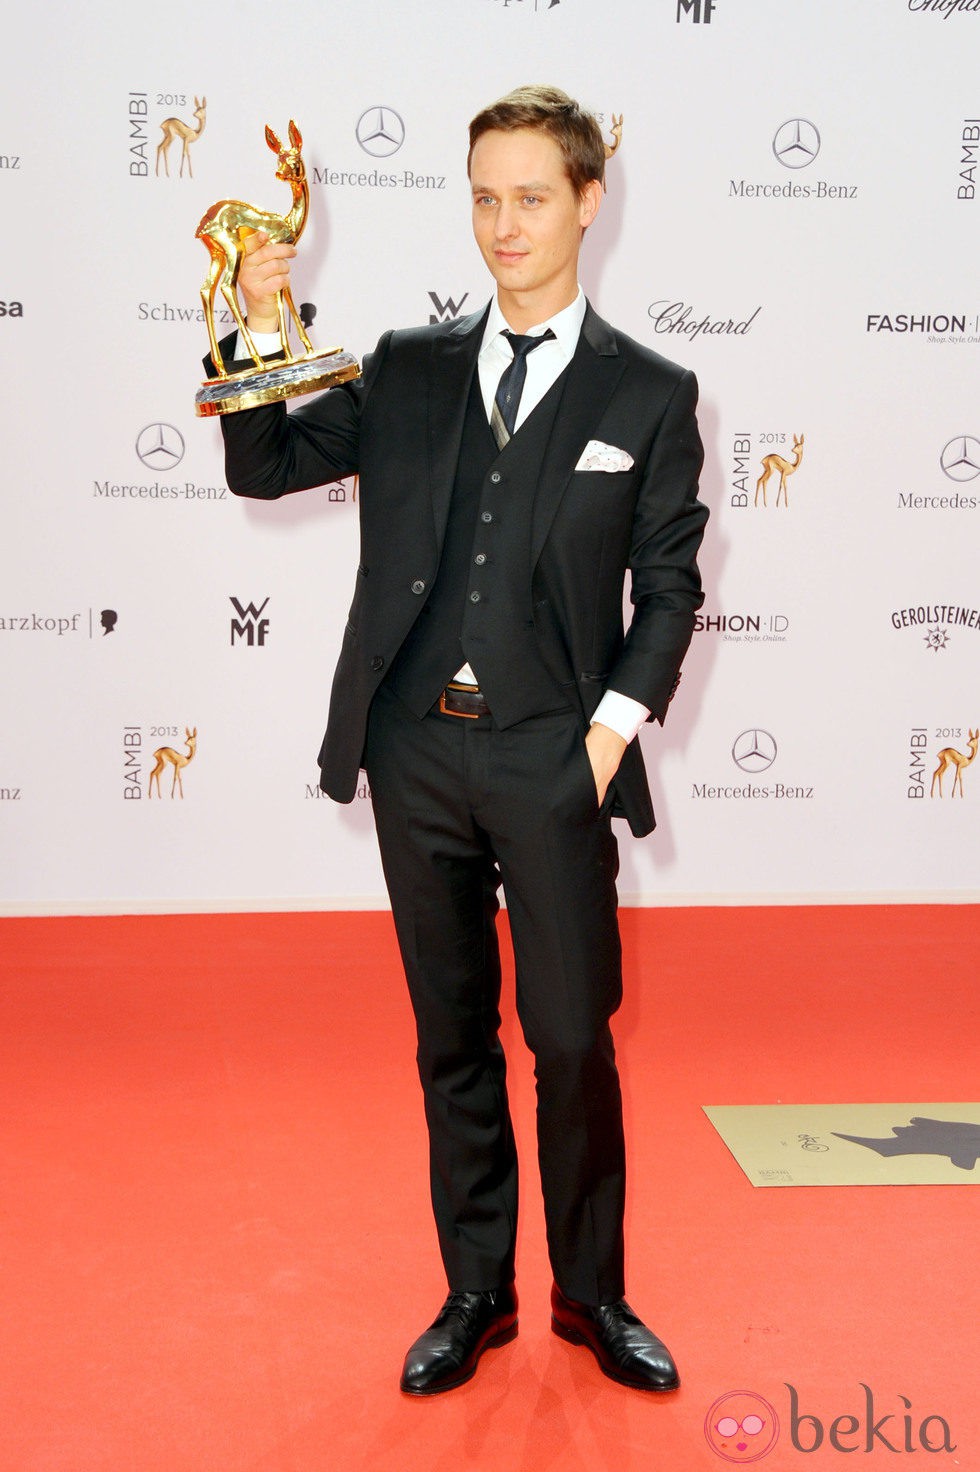 Tom Schilling posando con su galardón de los Premios Bambi 2013